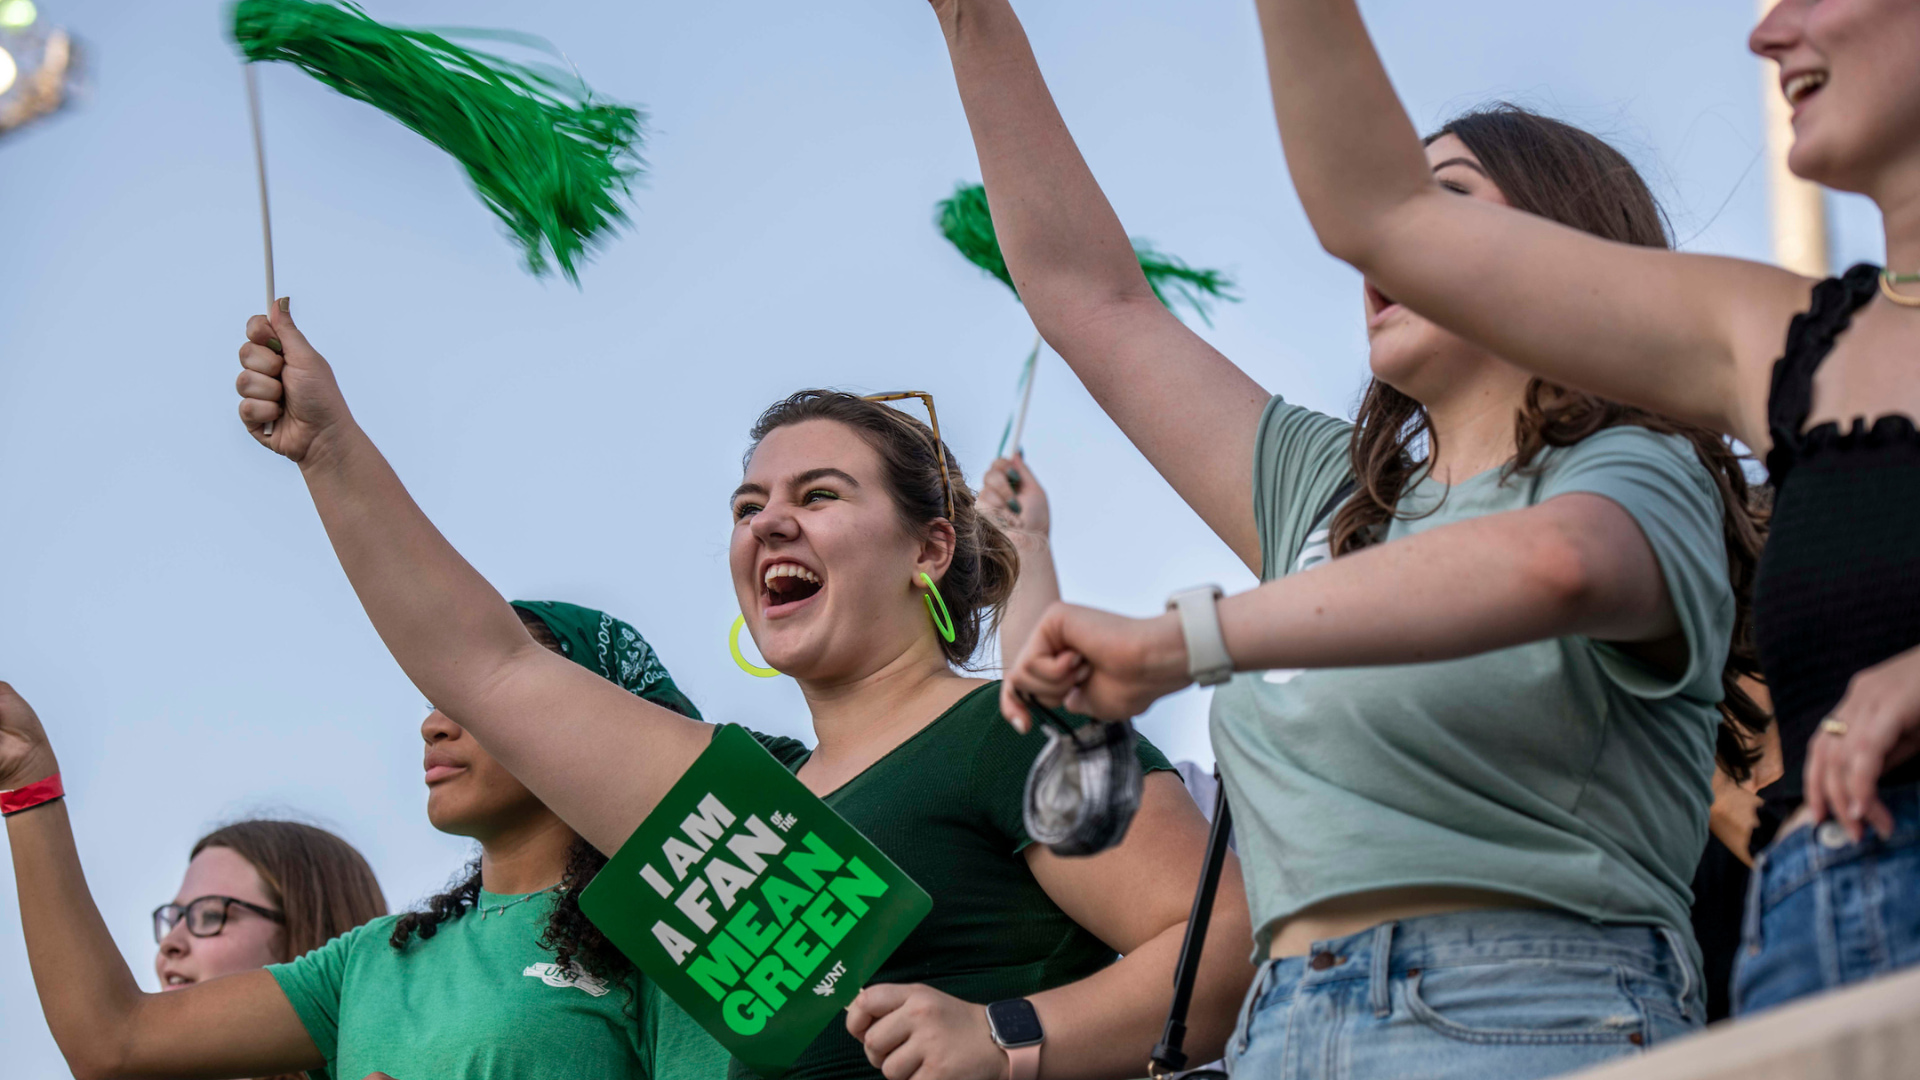 Students cheering at a football game